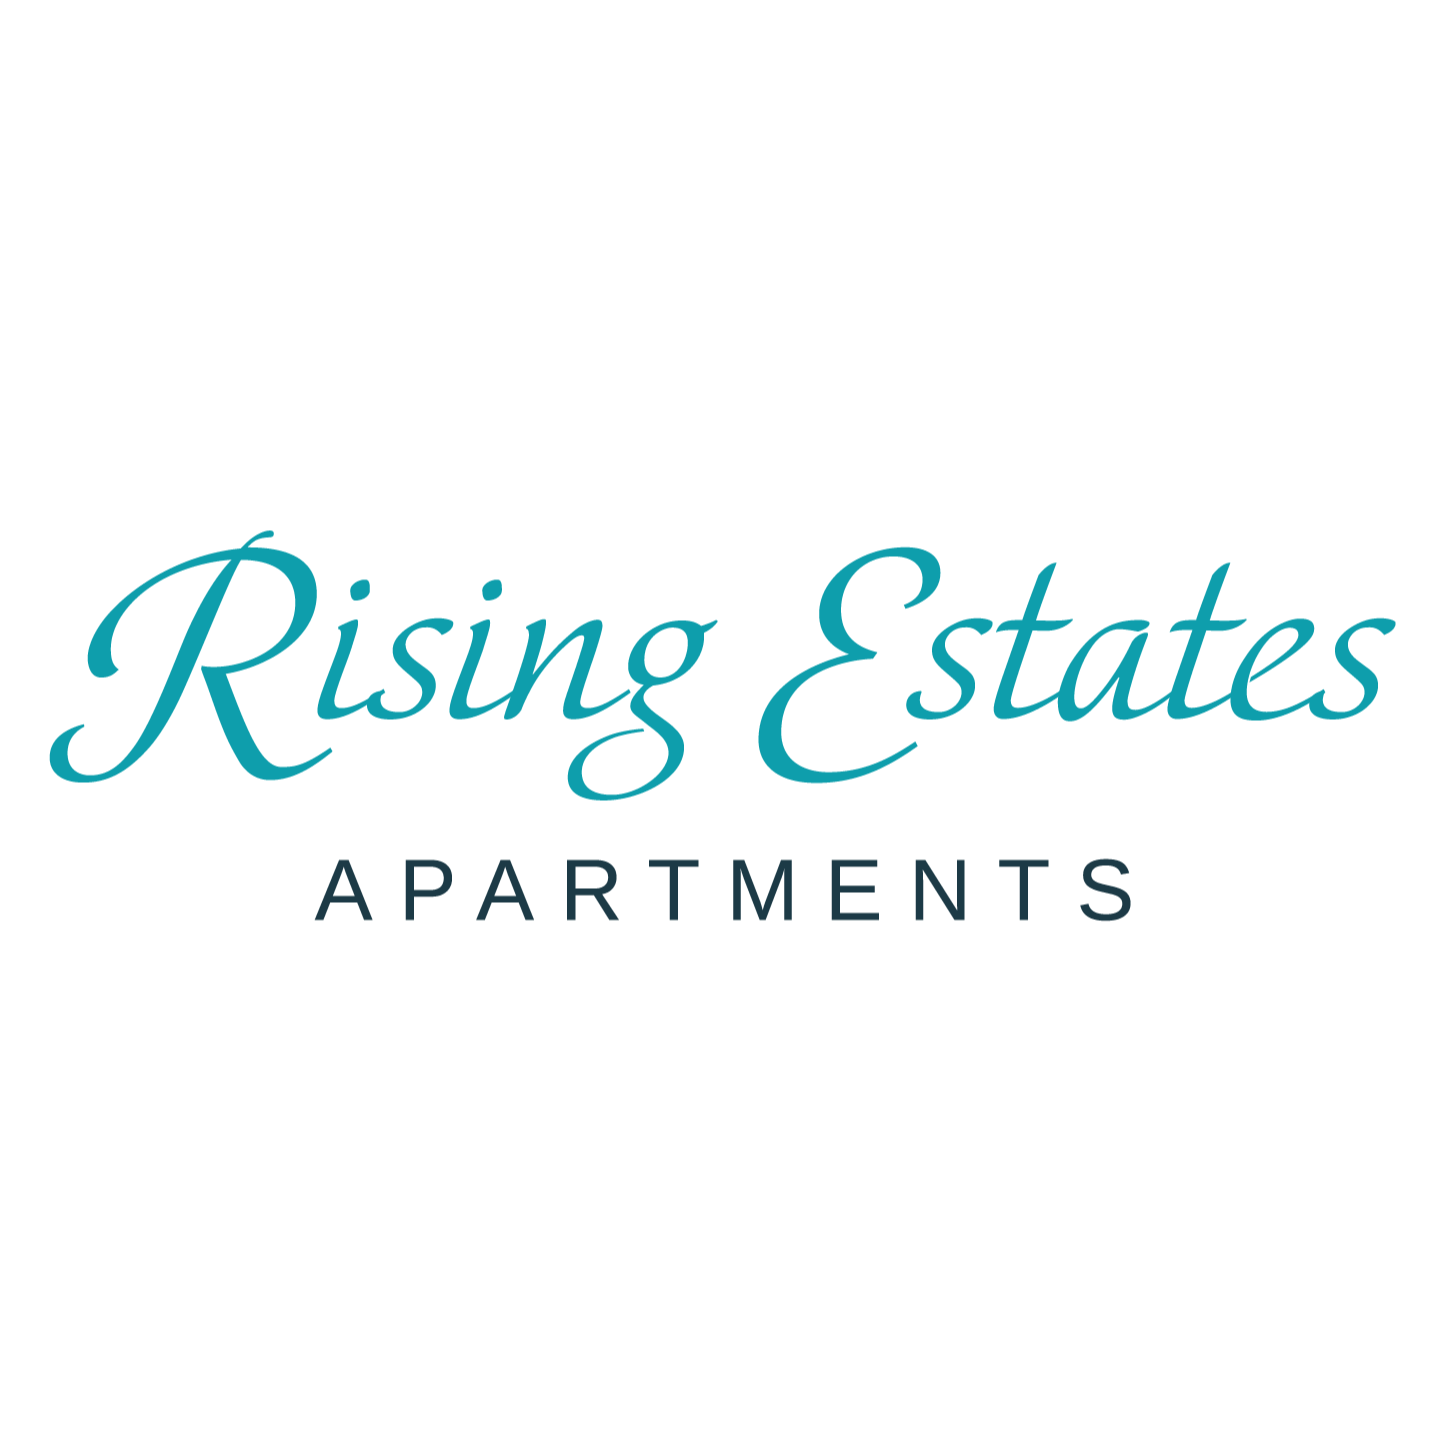 Rising Estates Apartments